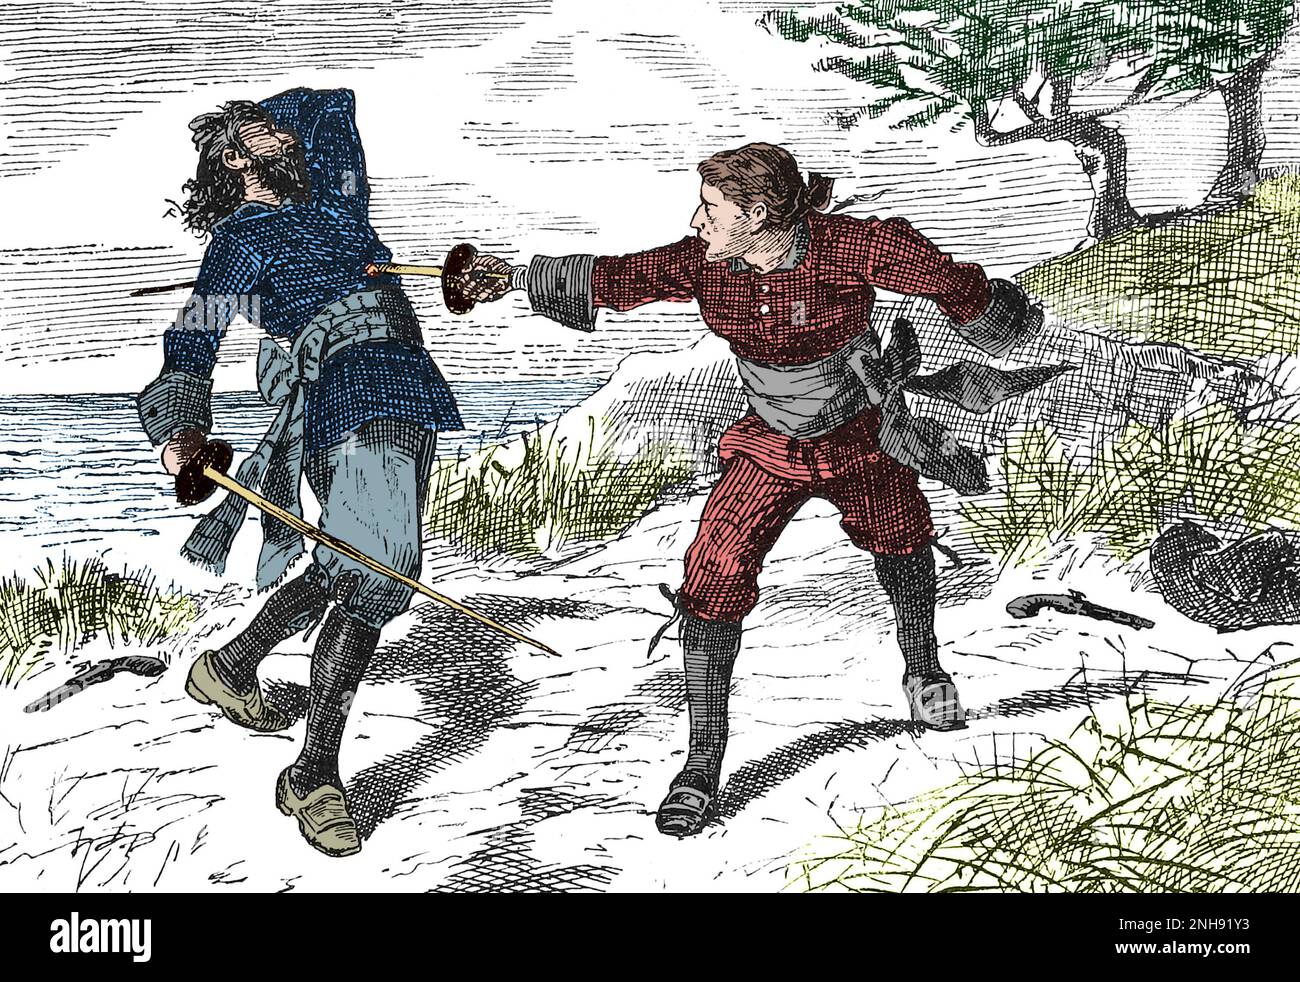 La pirata irlandesa Anne Bonny (1697-1721) disfrazada de hombre, matando a otro marinero en un duelo. Ilustración John Abbott, 1874. Coloreado. Foto de stock